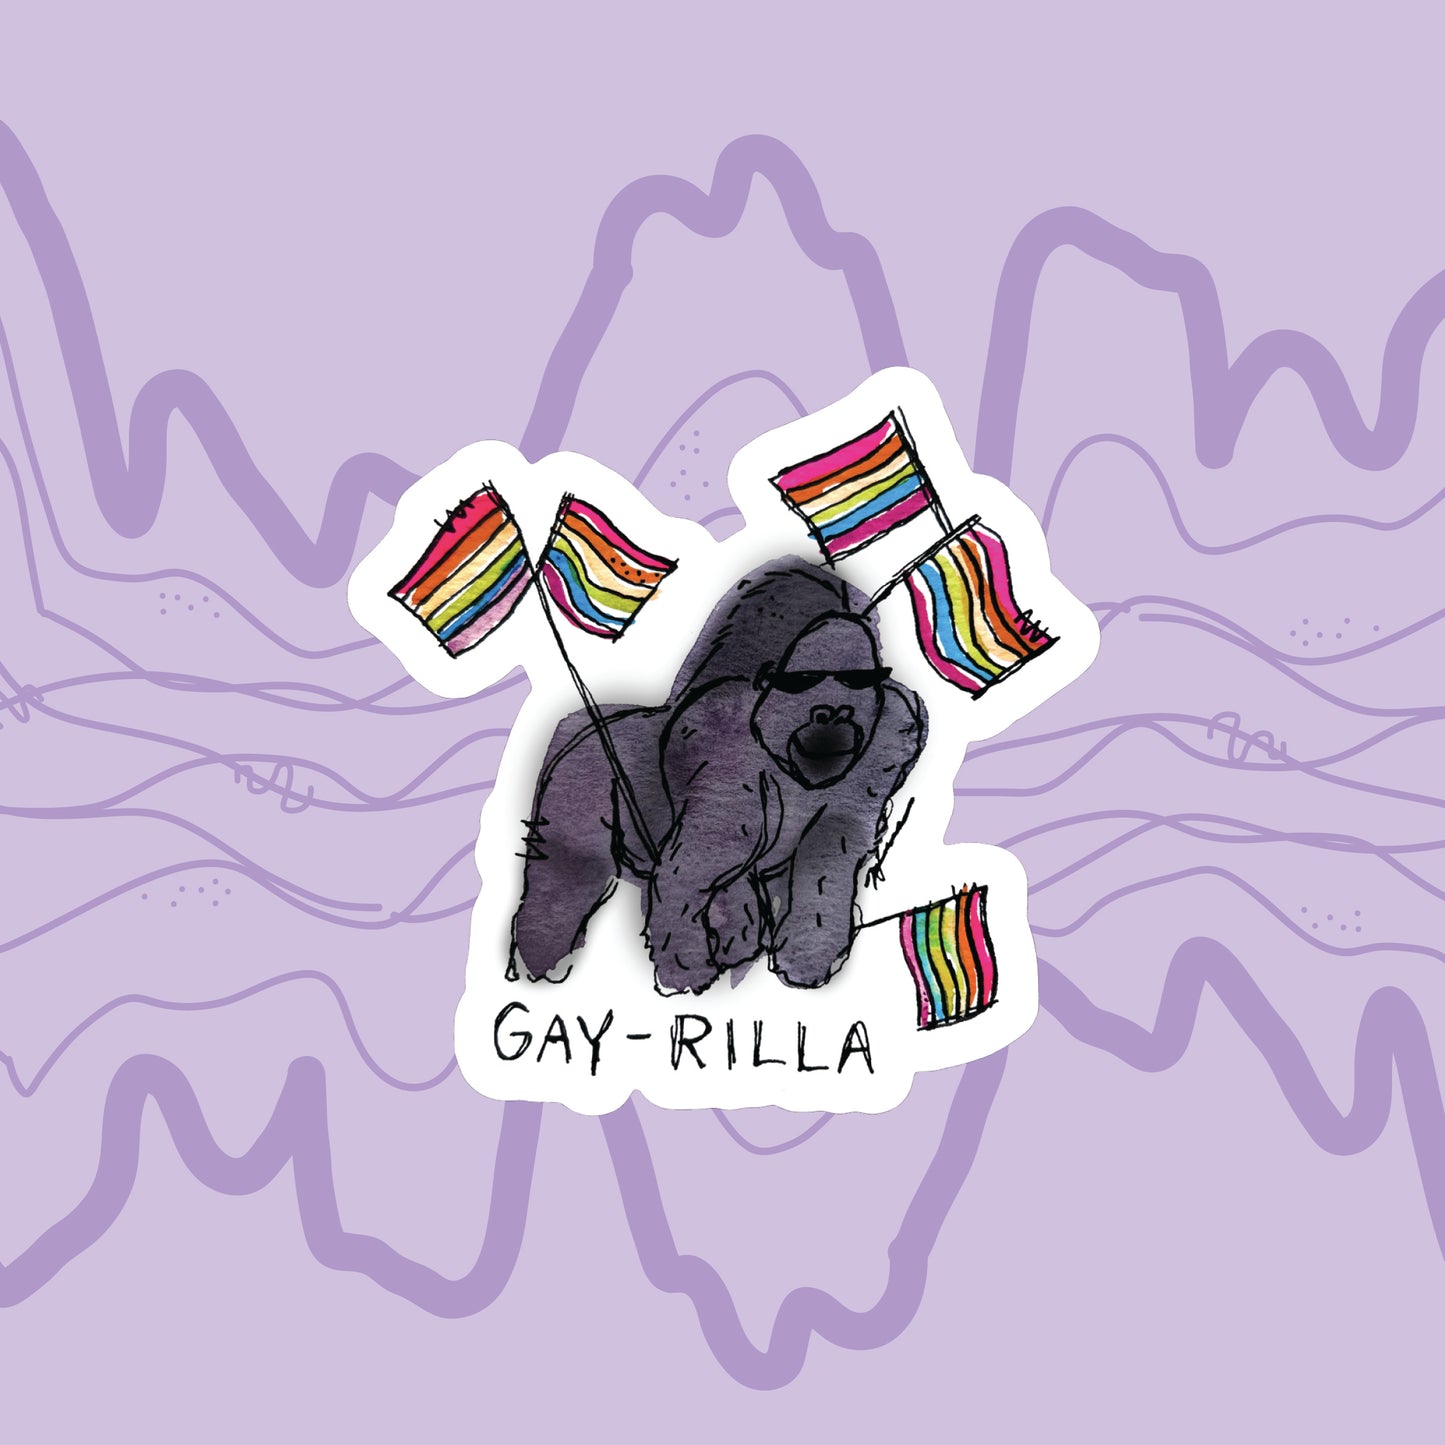 "Gay-rilla" Sticker